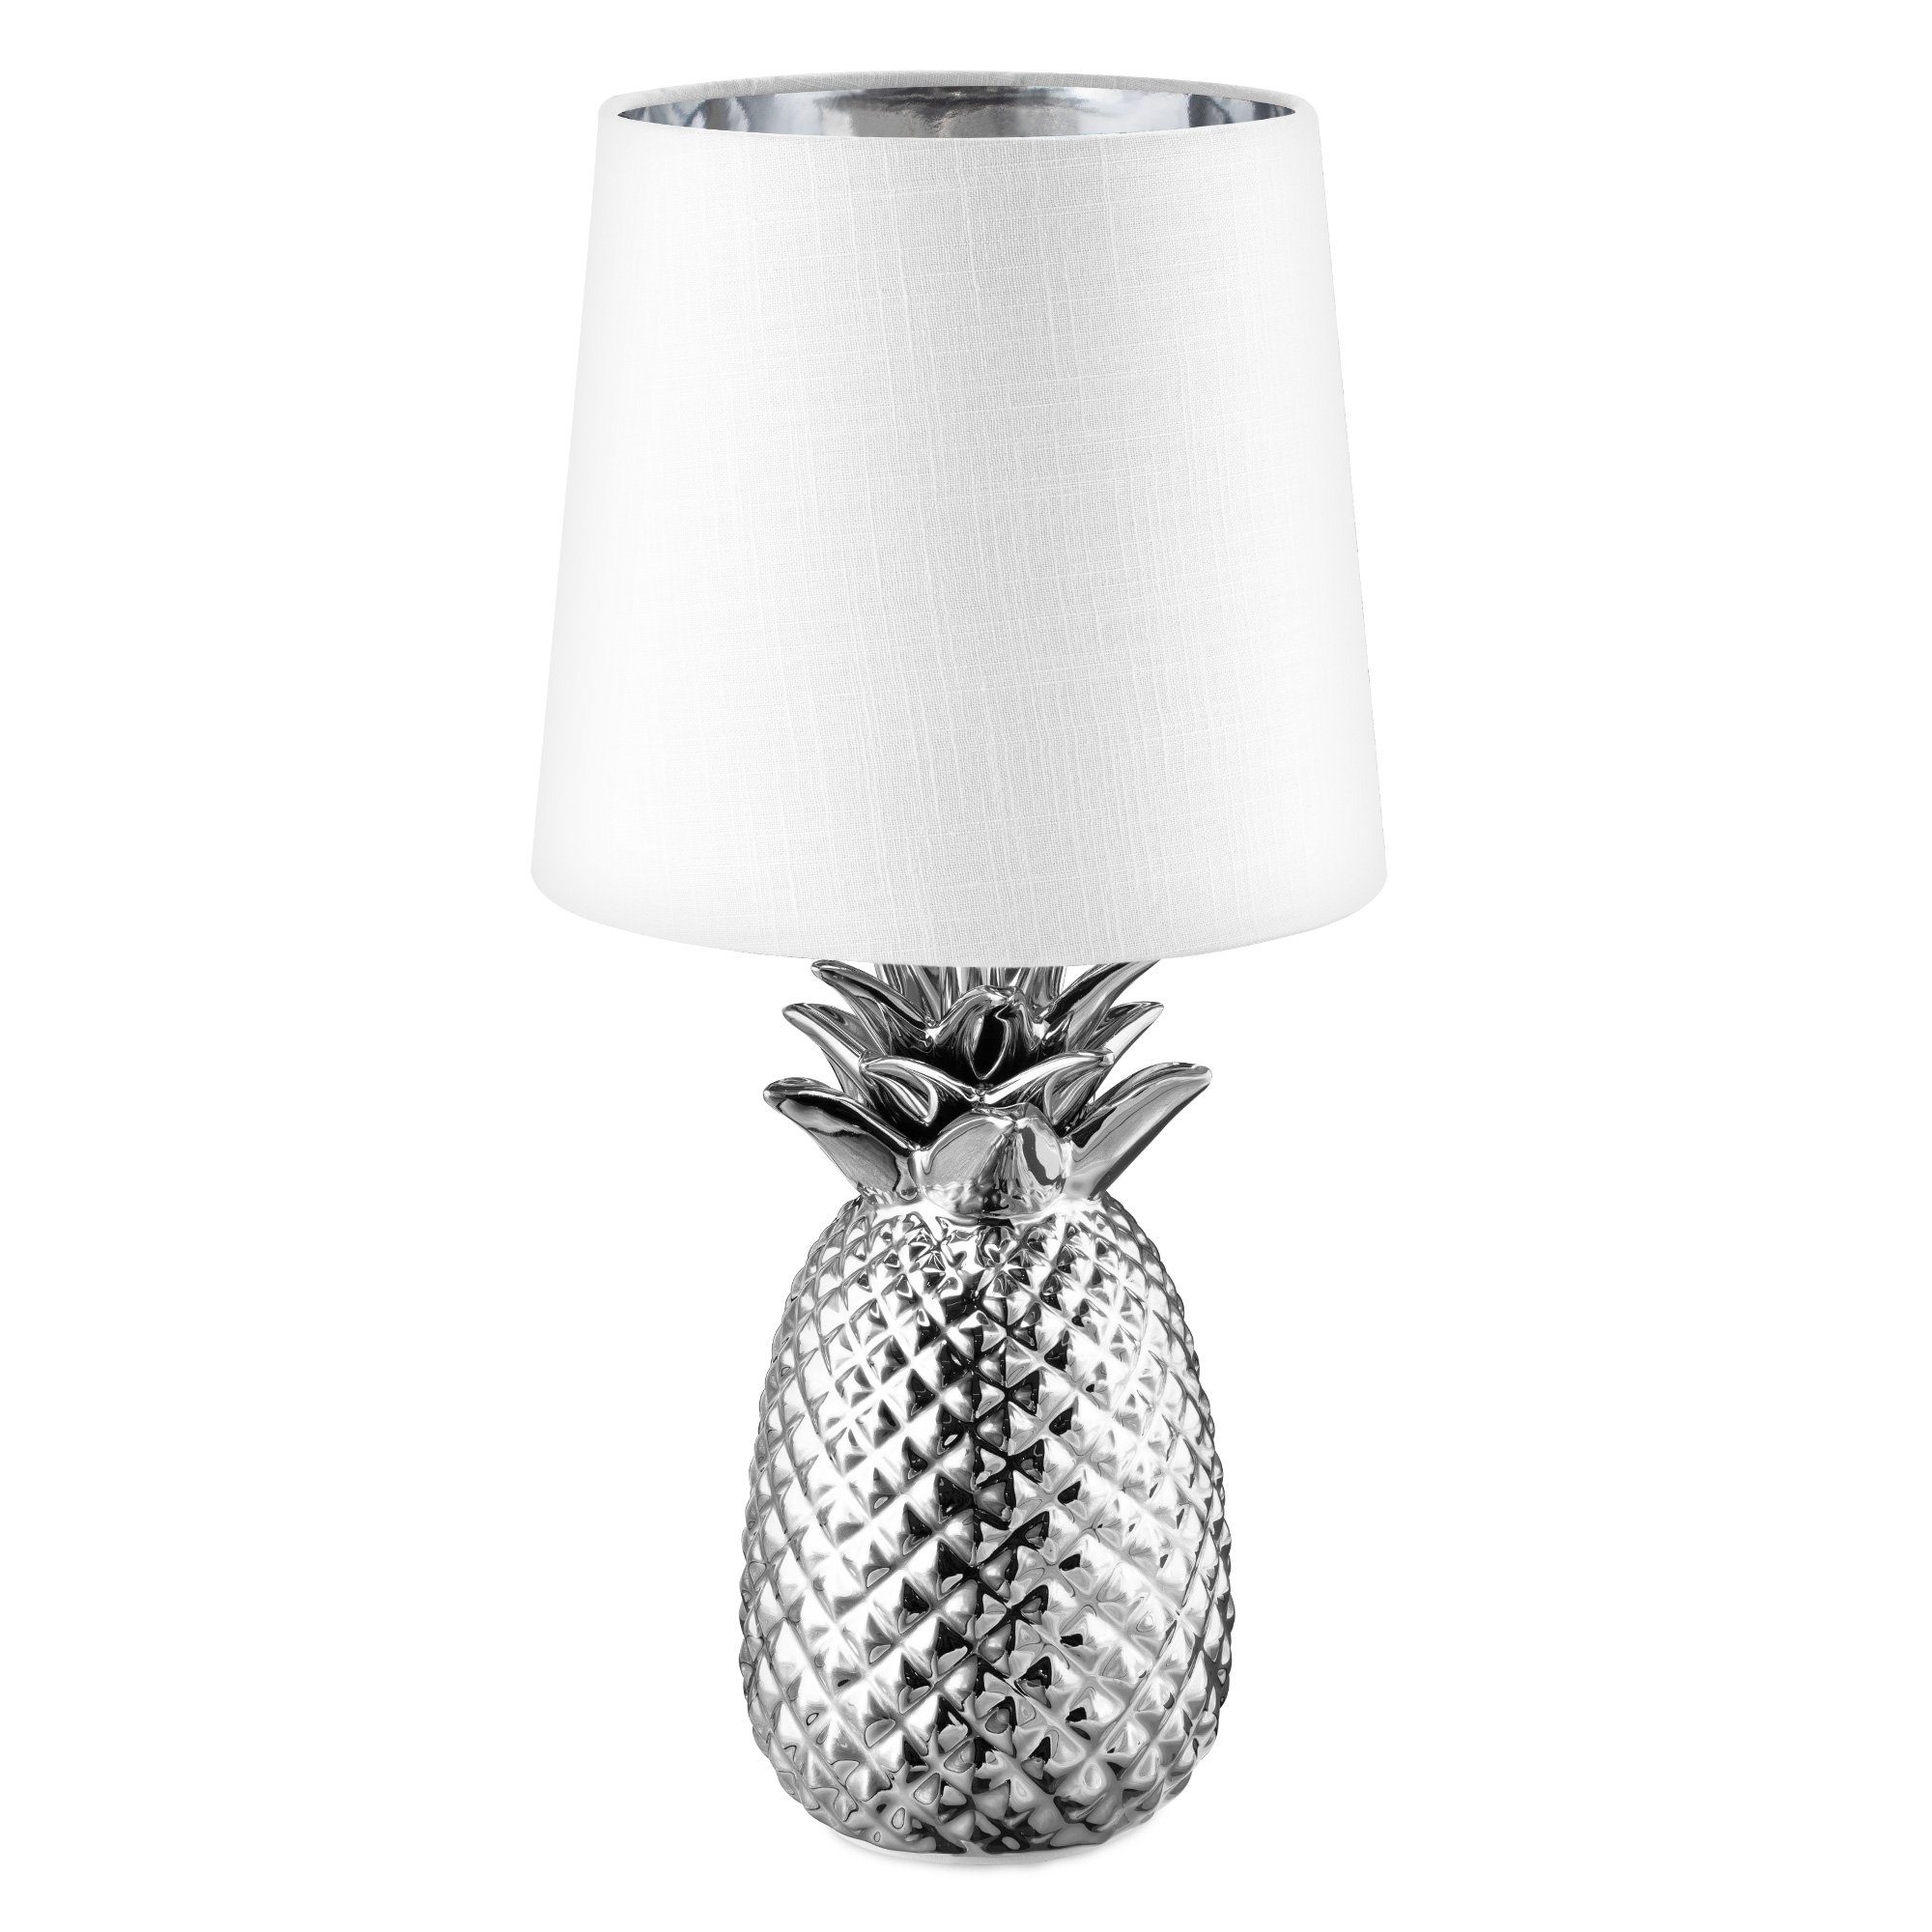 Silberfarben Stoffschirm Weiß Keramik Reality Leuchten Pineapple R50421089 Tischleuchte 